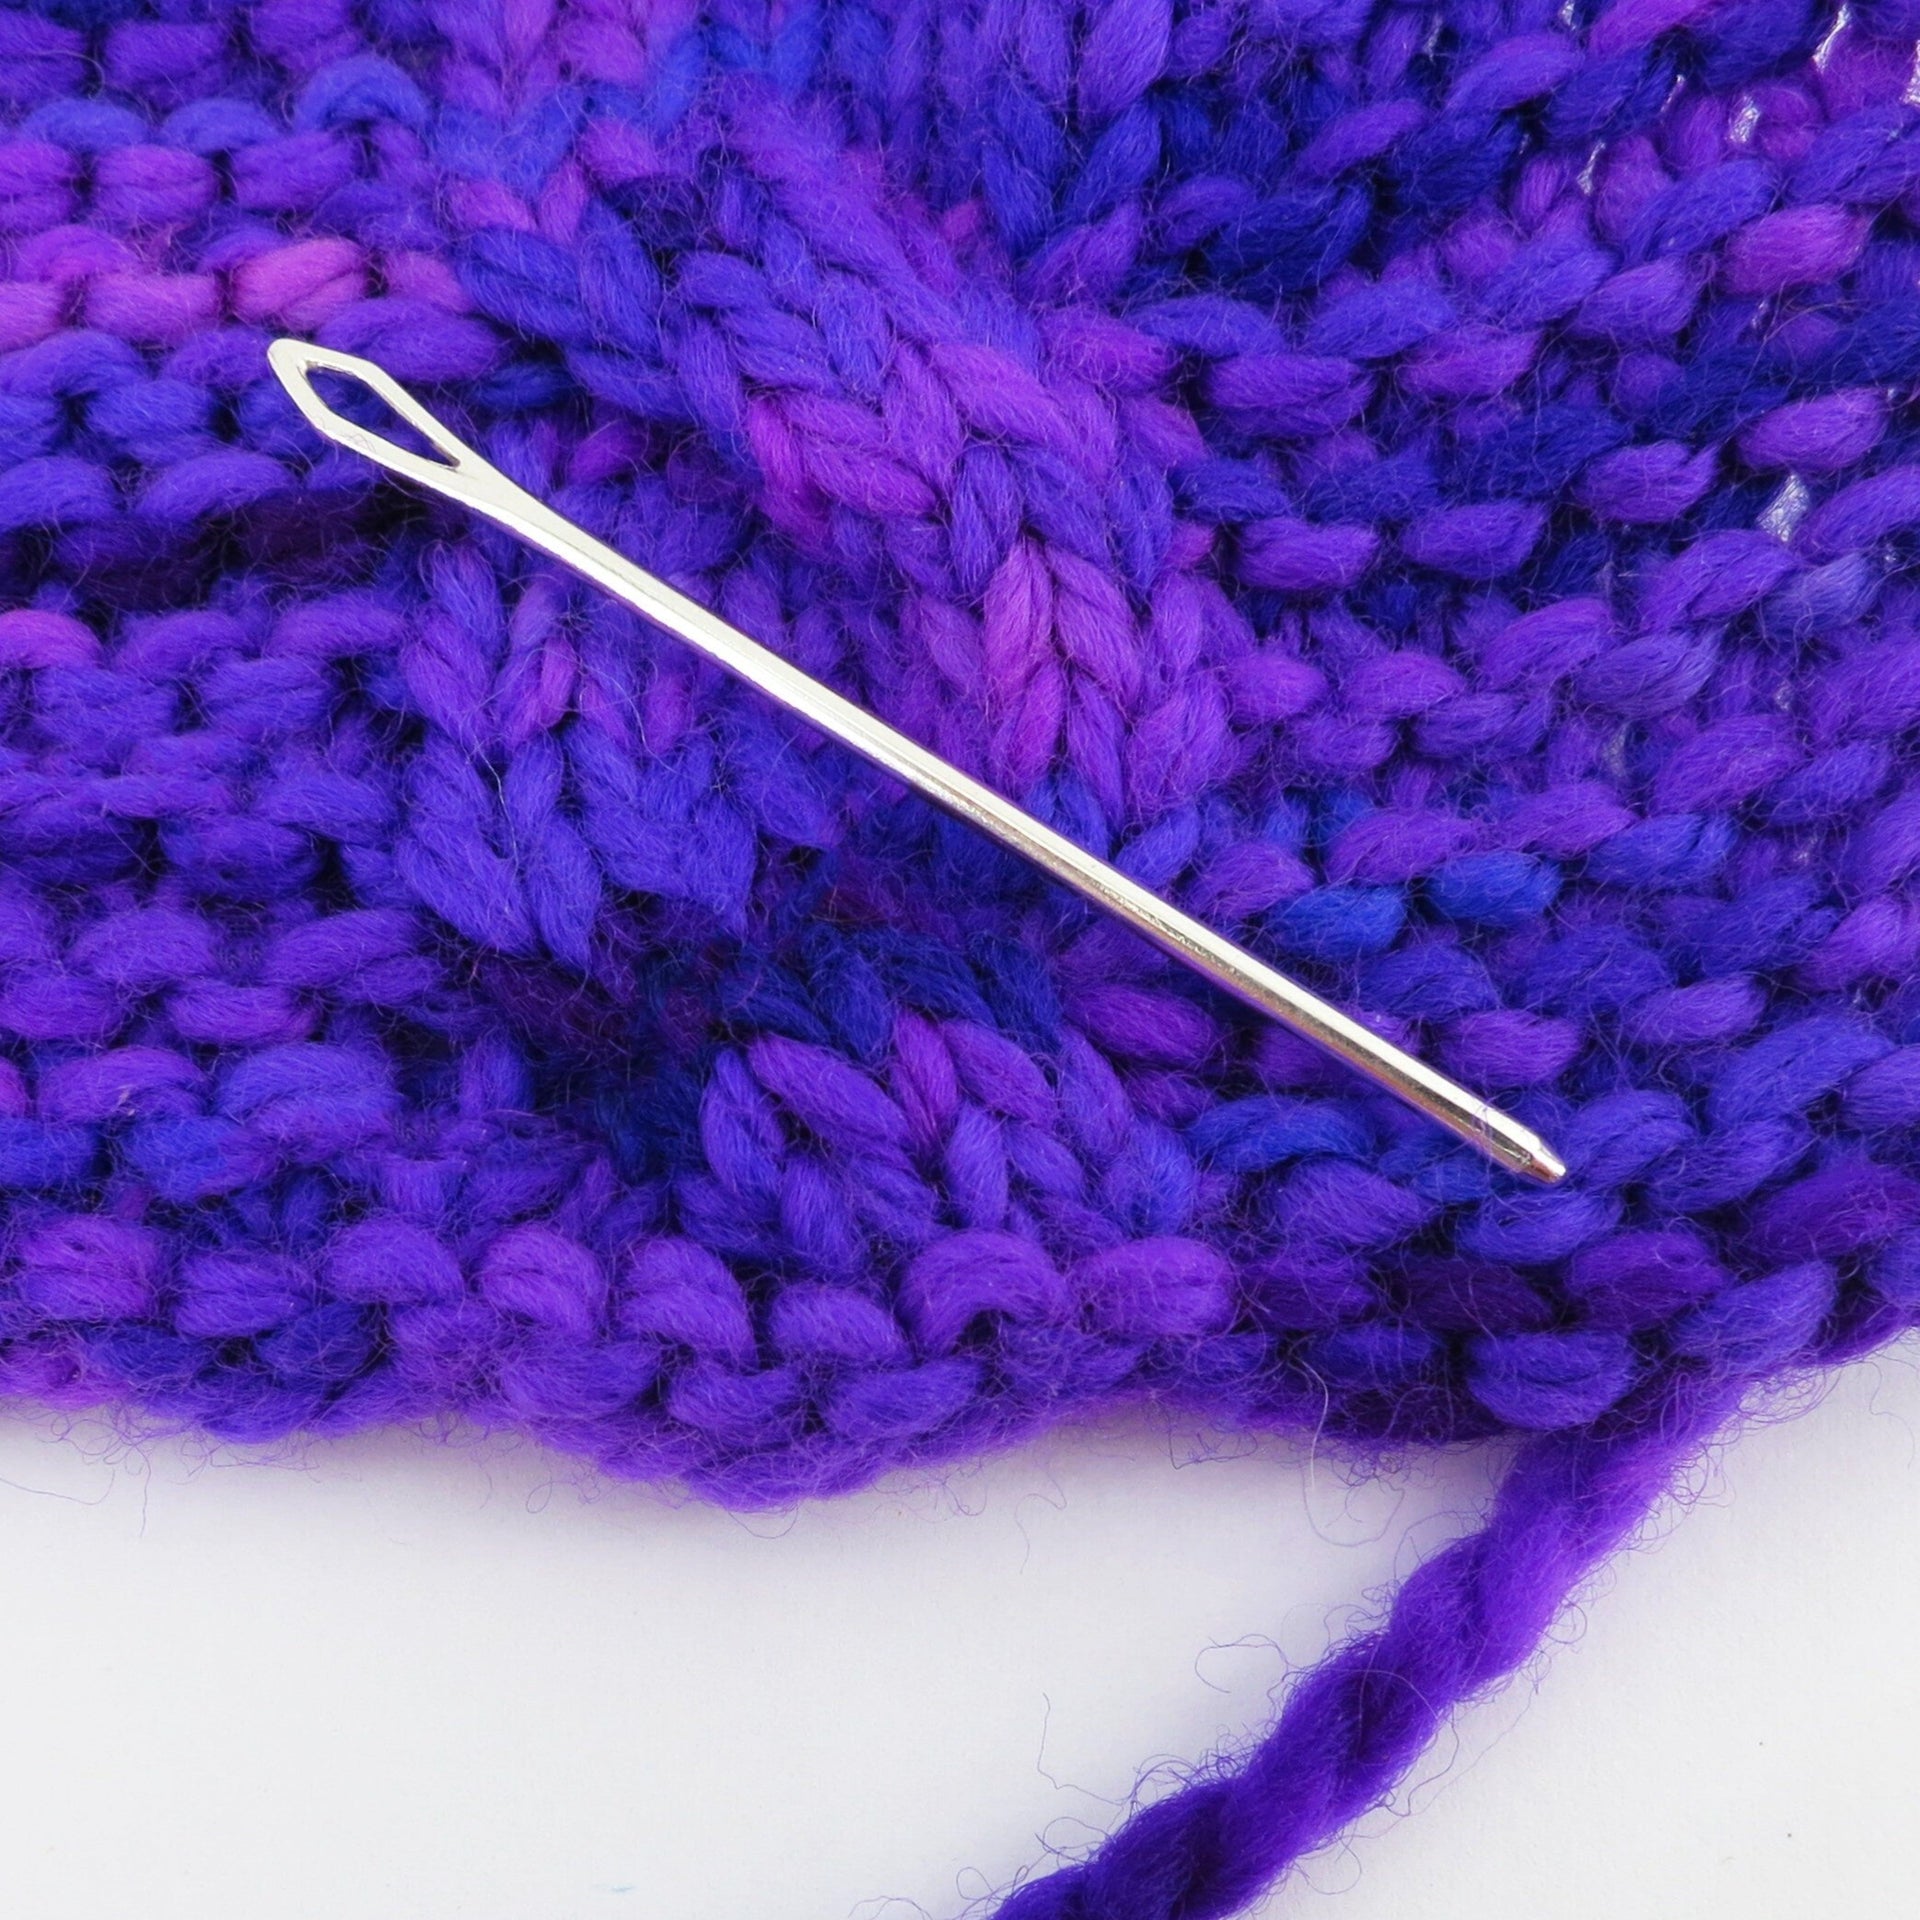 Twisty Sterling Silver Yarn Needle for Darning, Knitting, Crochet, Weaving,  Gifts 